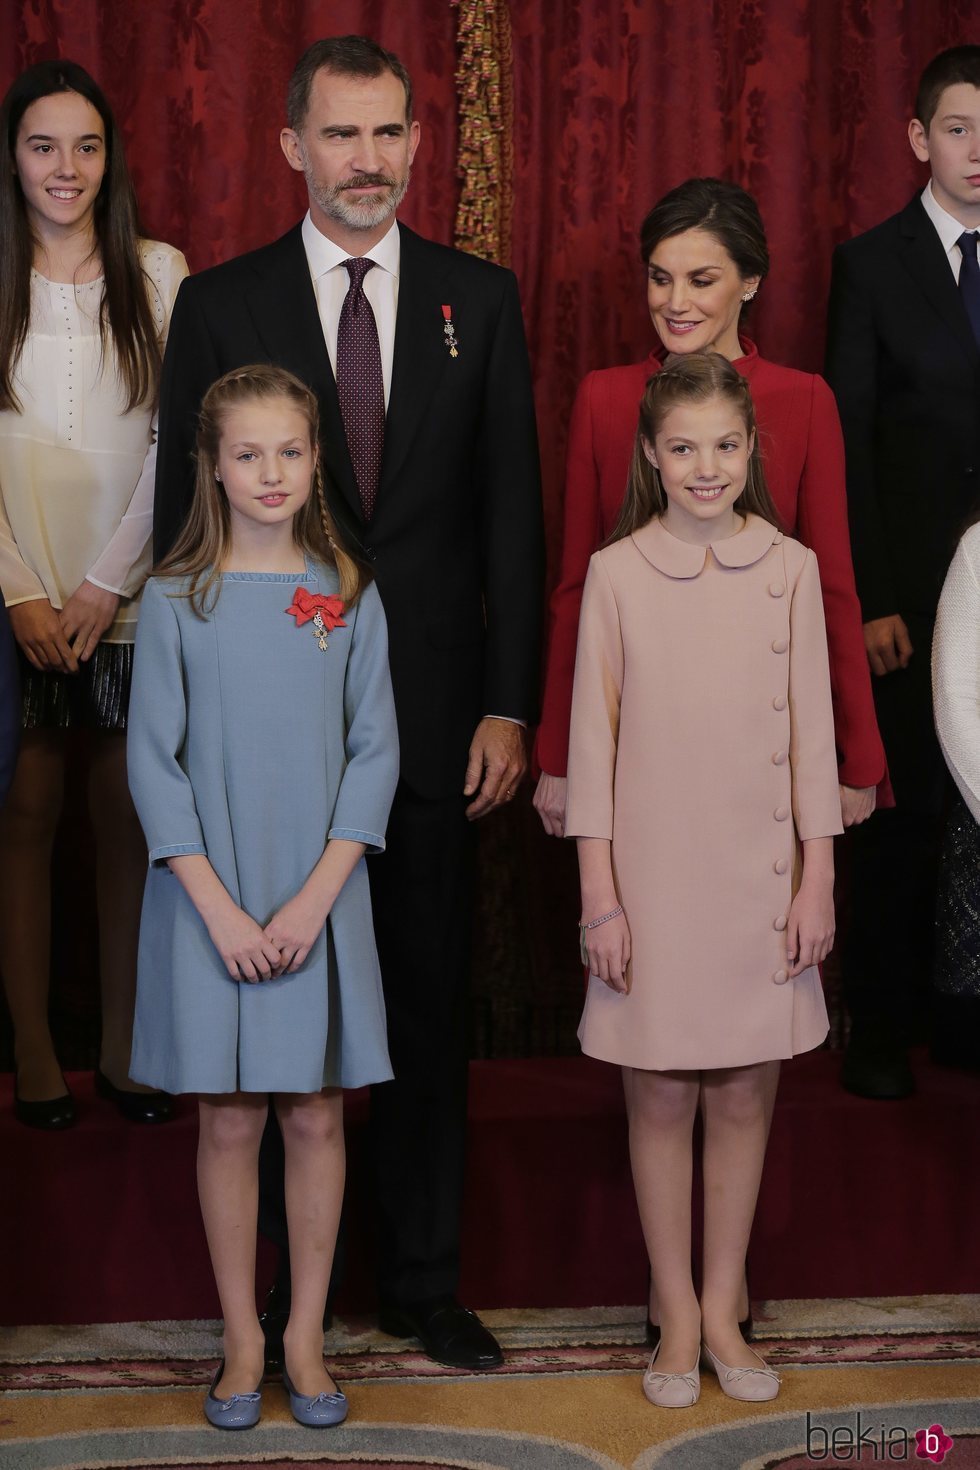 La Infanta Sofía con un vestido rosa cuarzo en la entrega del Toisón de Oro